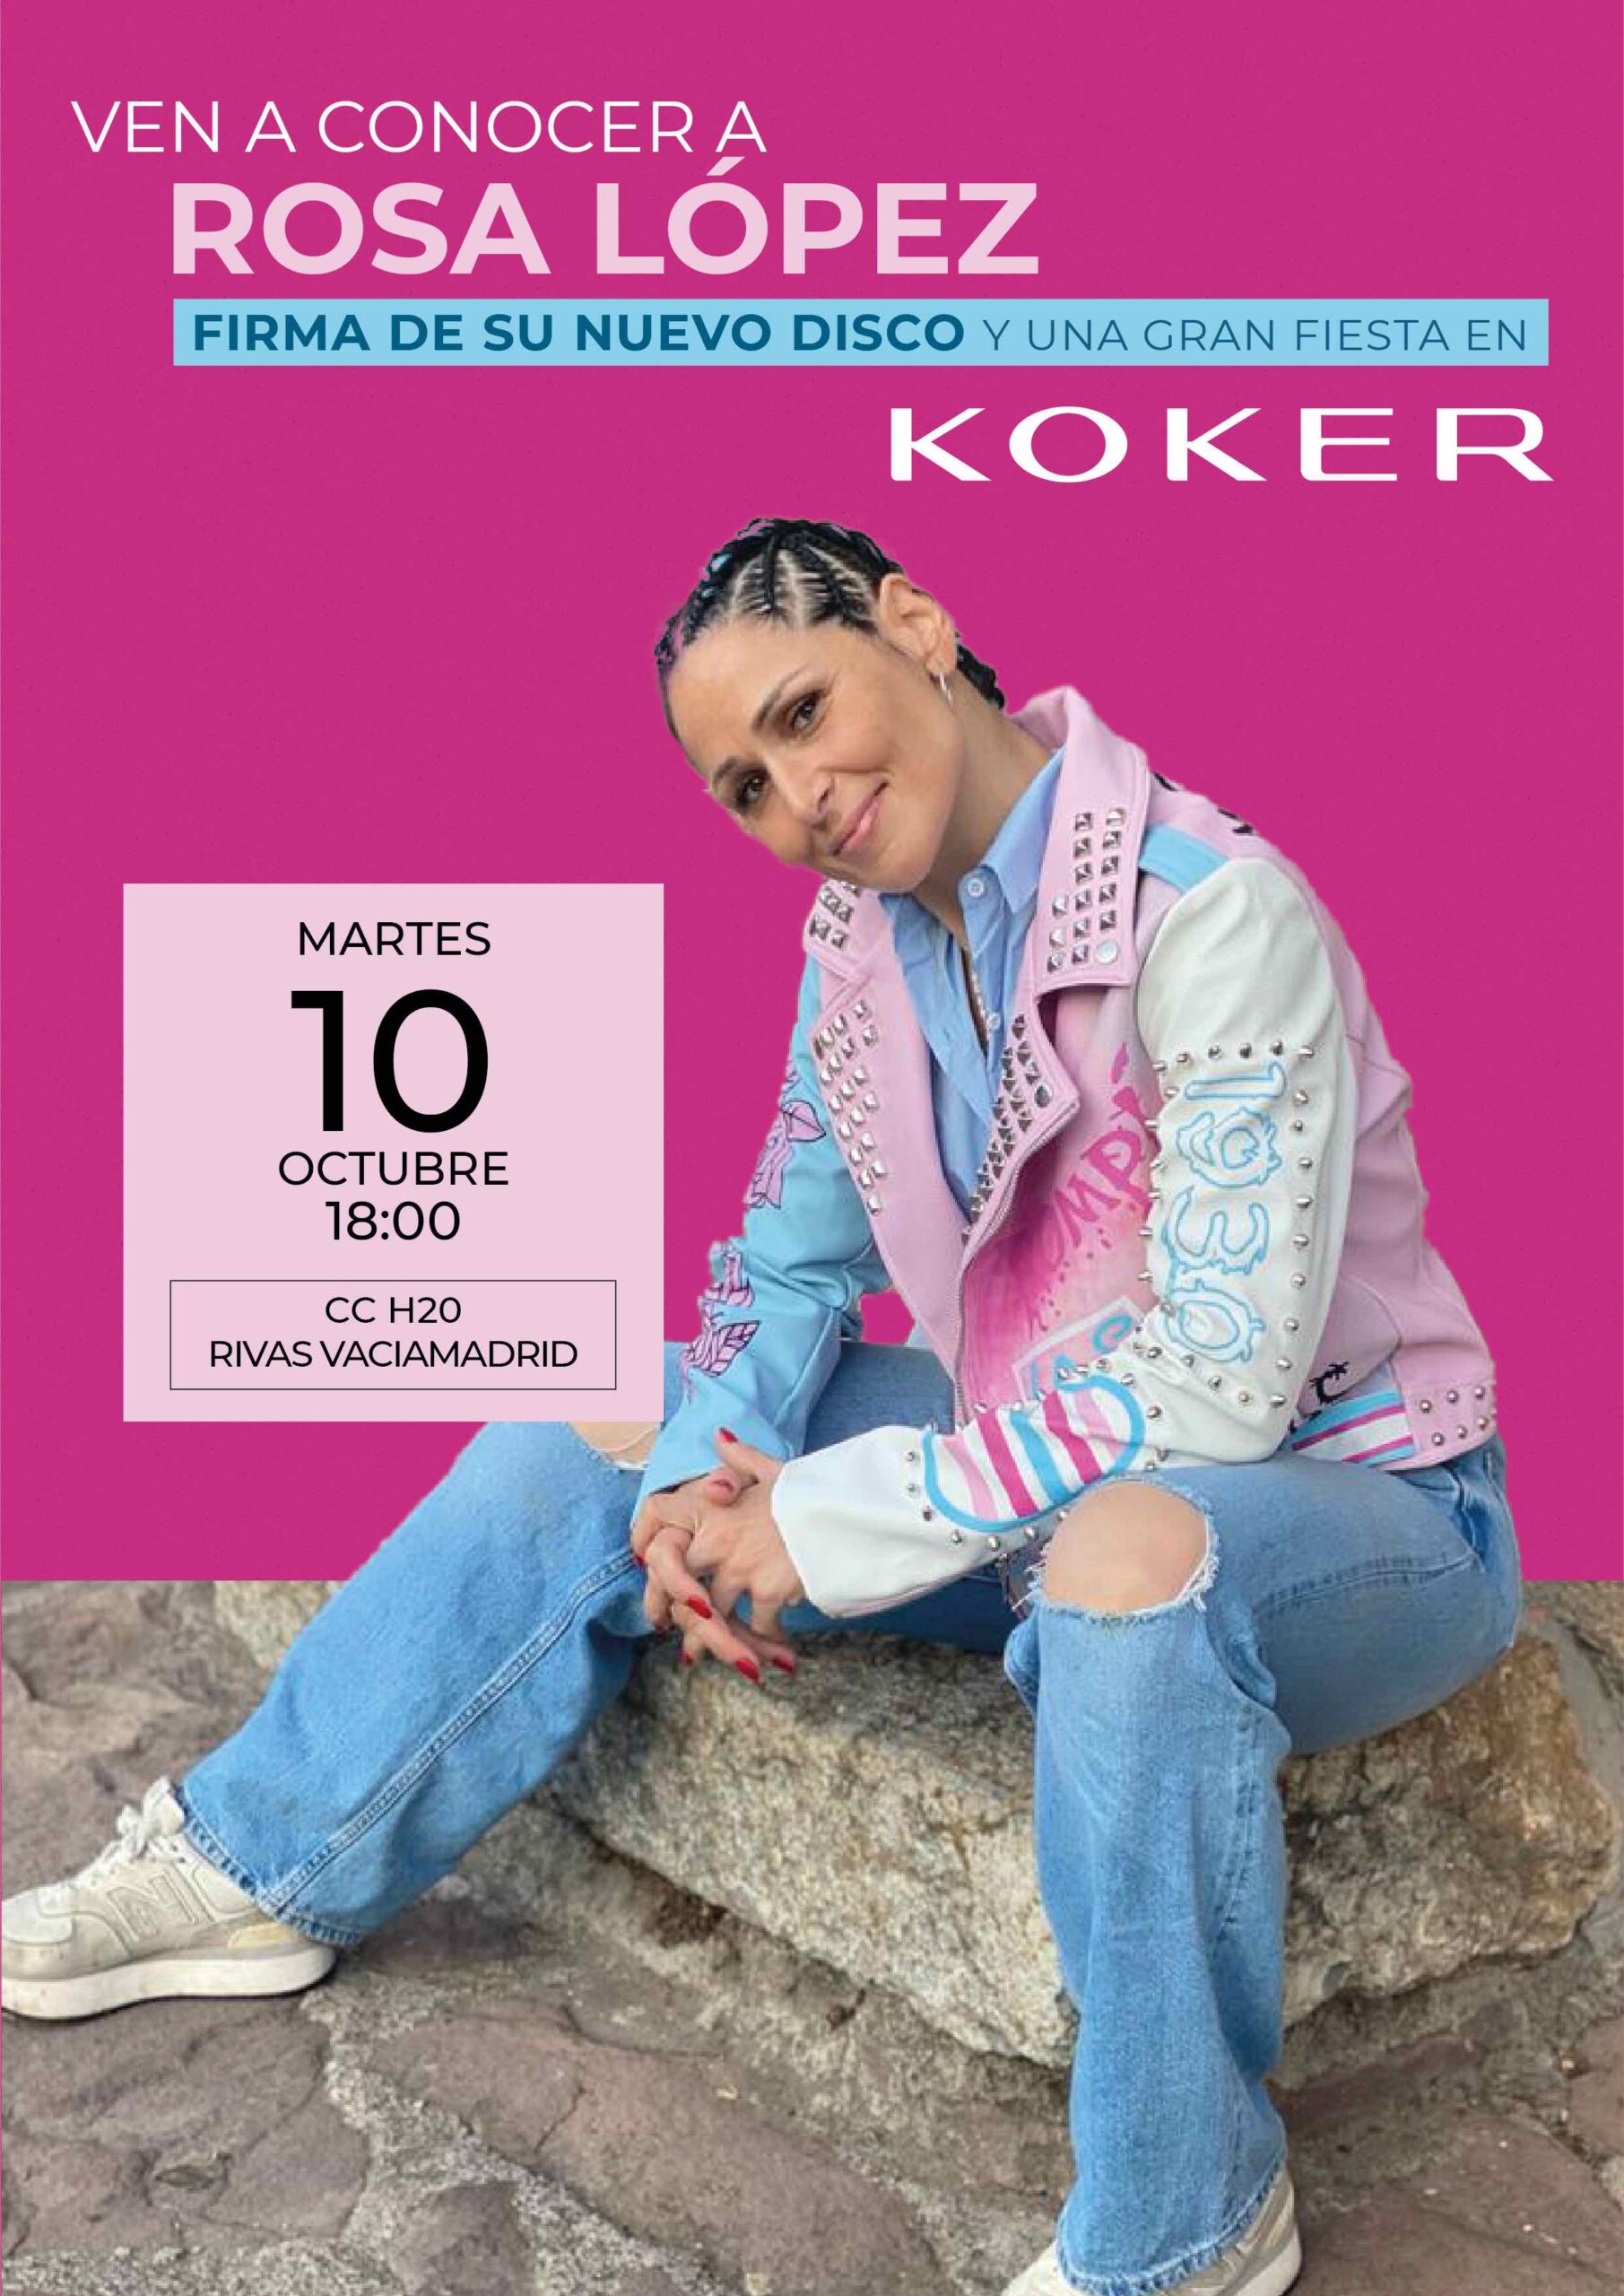 Koker y Rosa López lanzan la Biker 1930 edición limitada en apoyo a la comunidad LGTBI